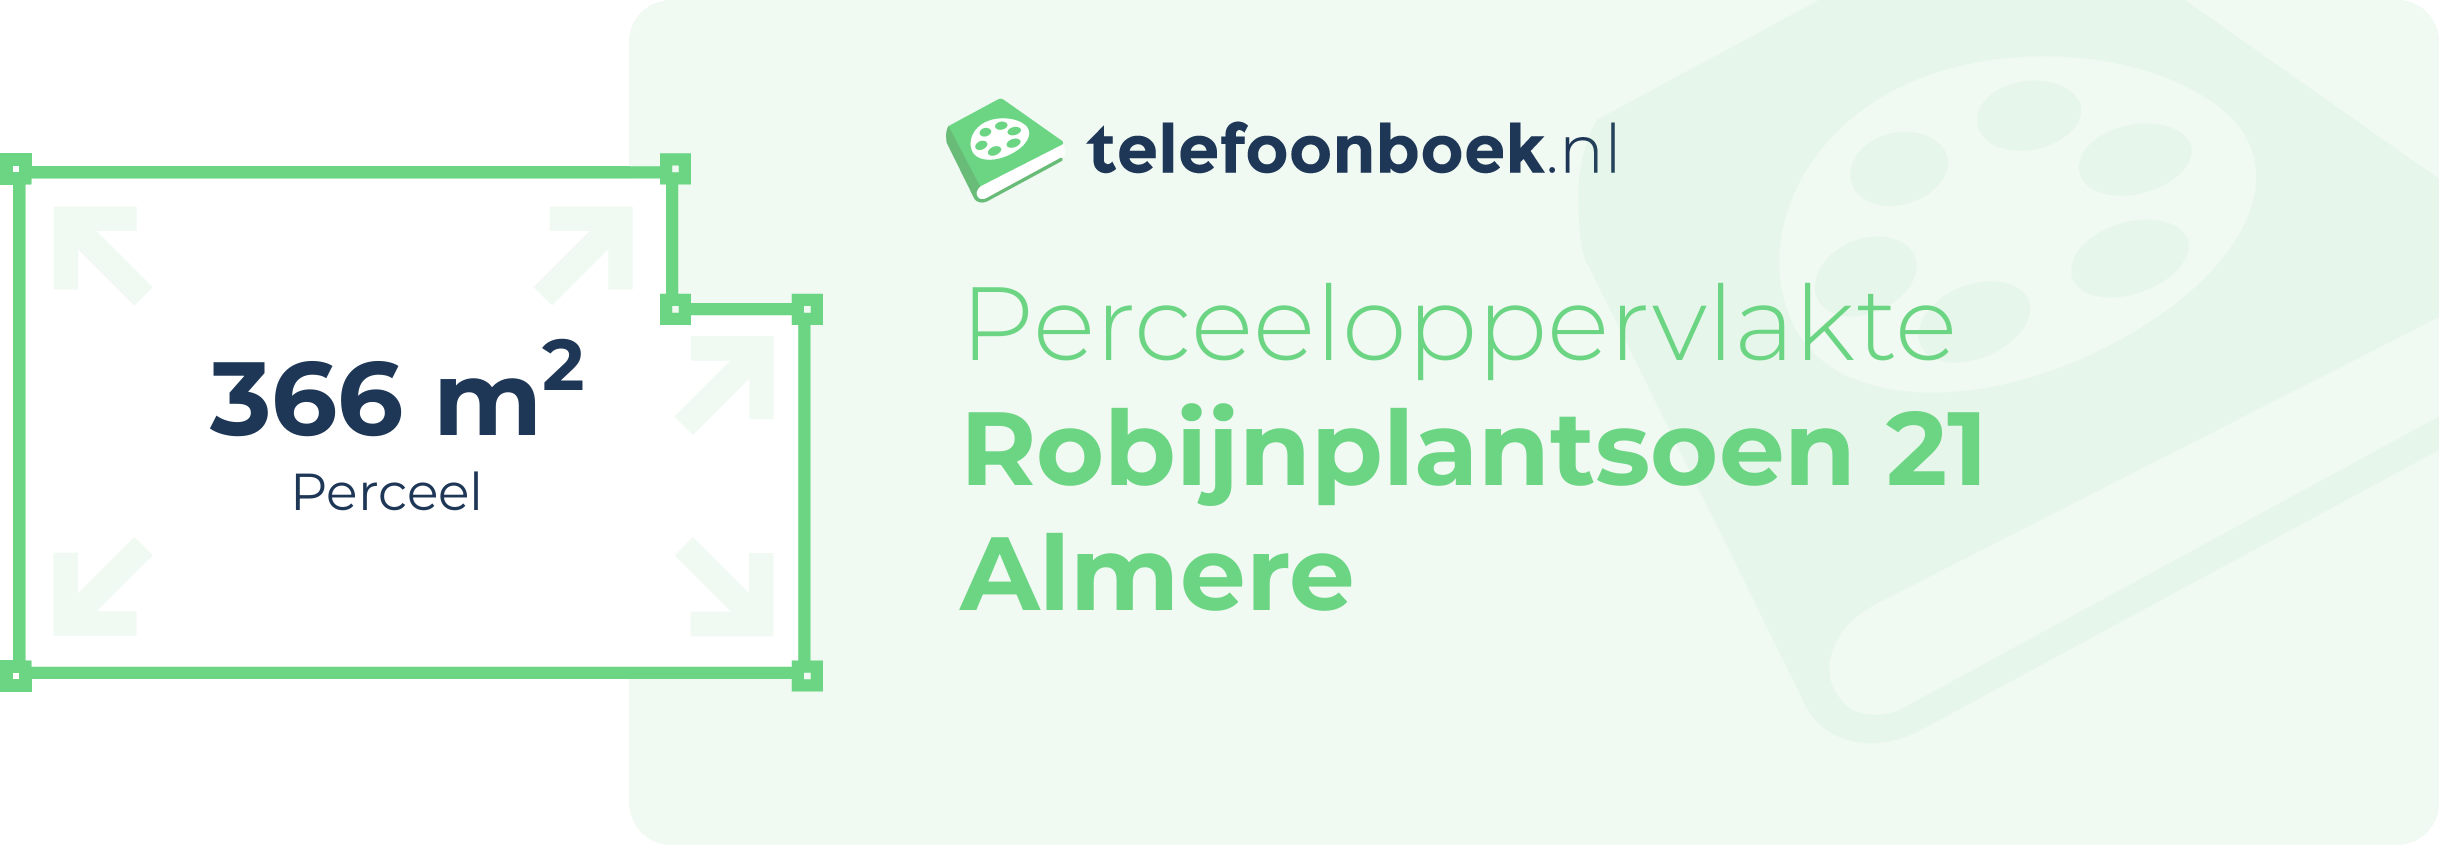 Perceeloppervlakte Robijnplantsoen 21 Almere